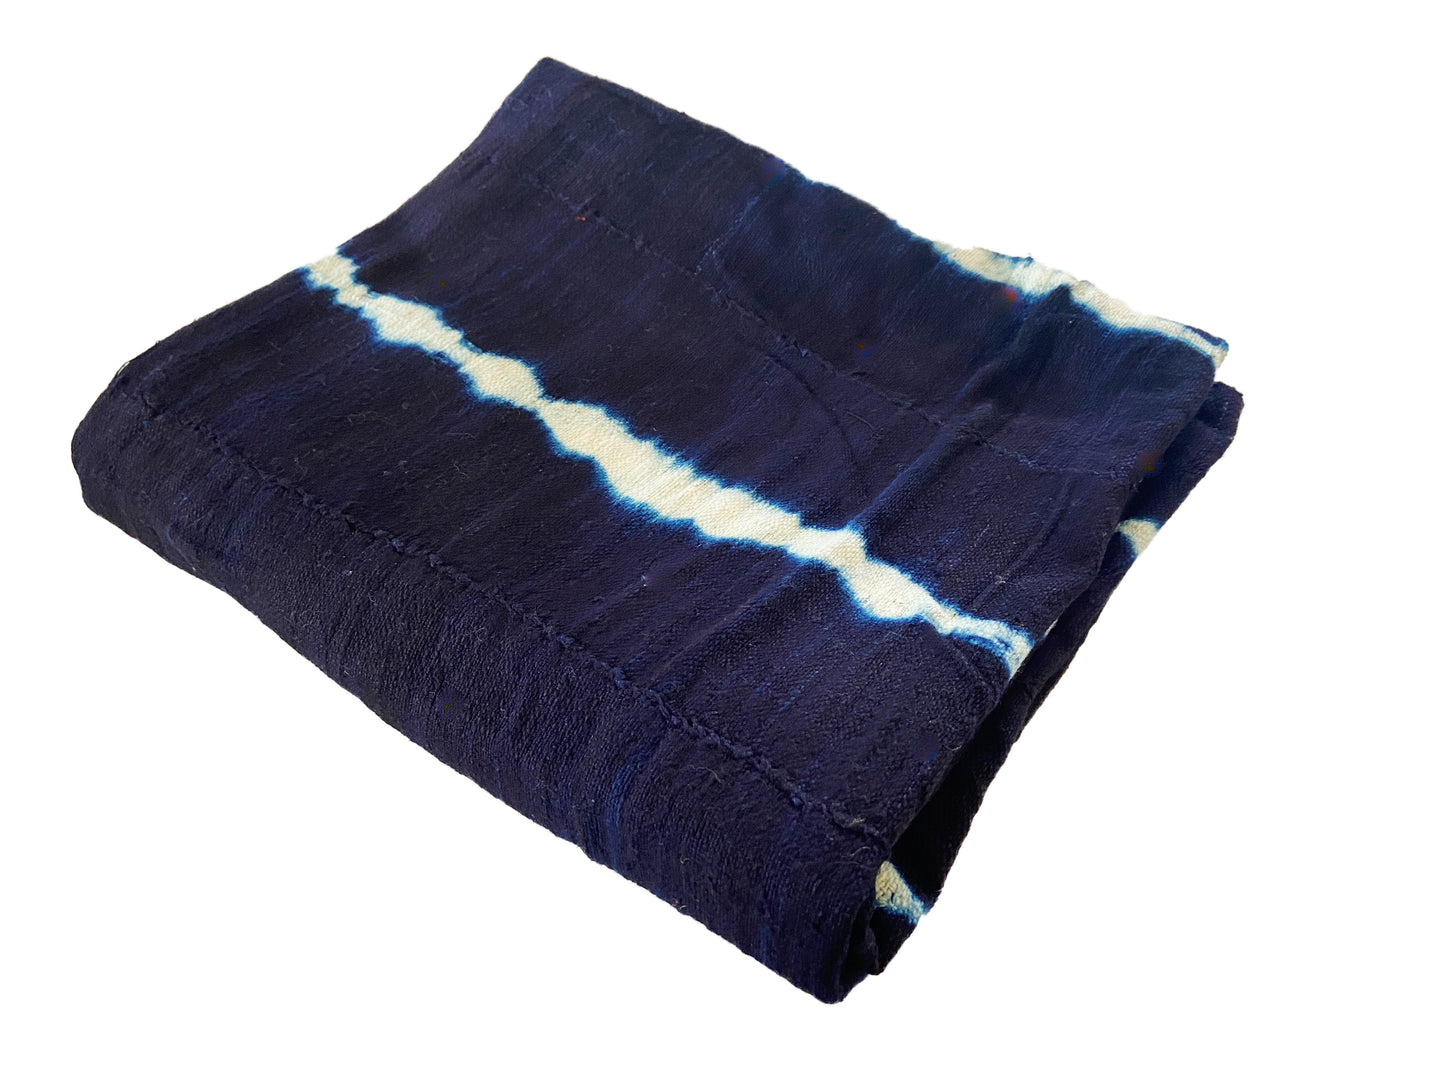 #1026A Fine Weaving Mali Indigo Mud Cloth Textile 47" by 60"